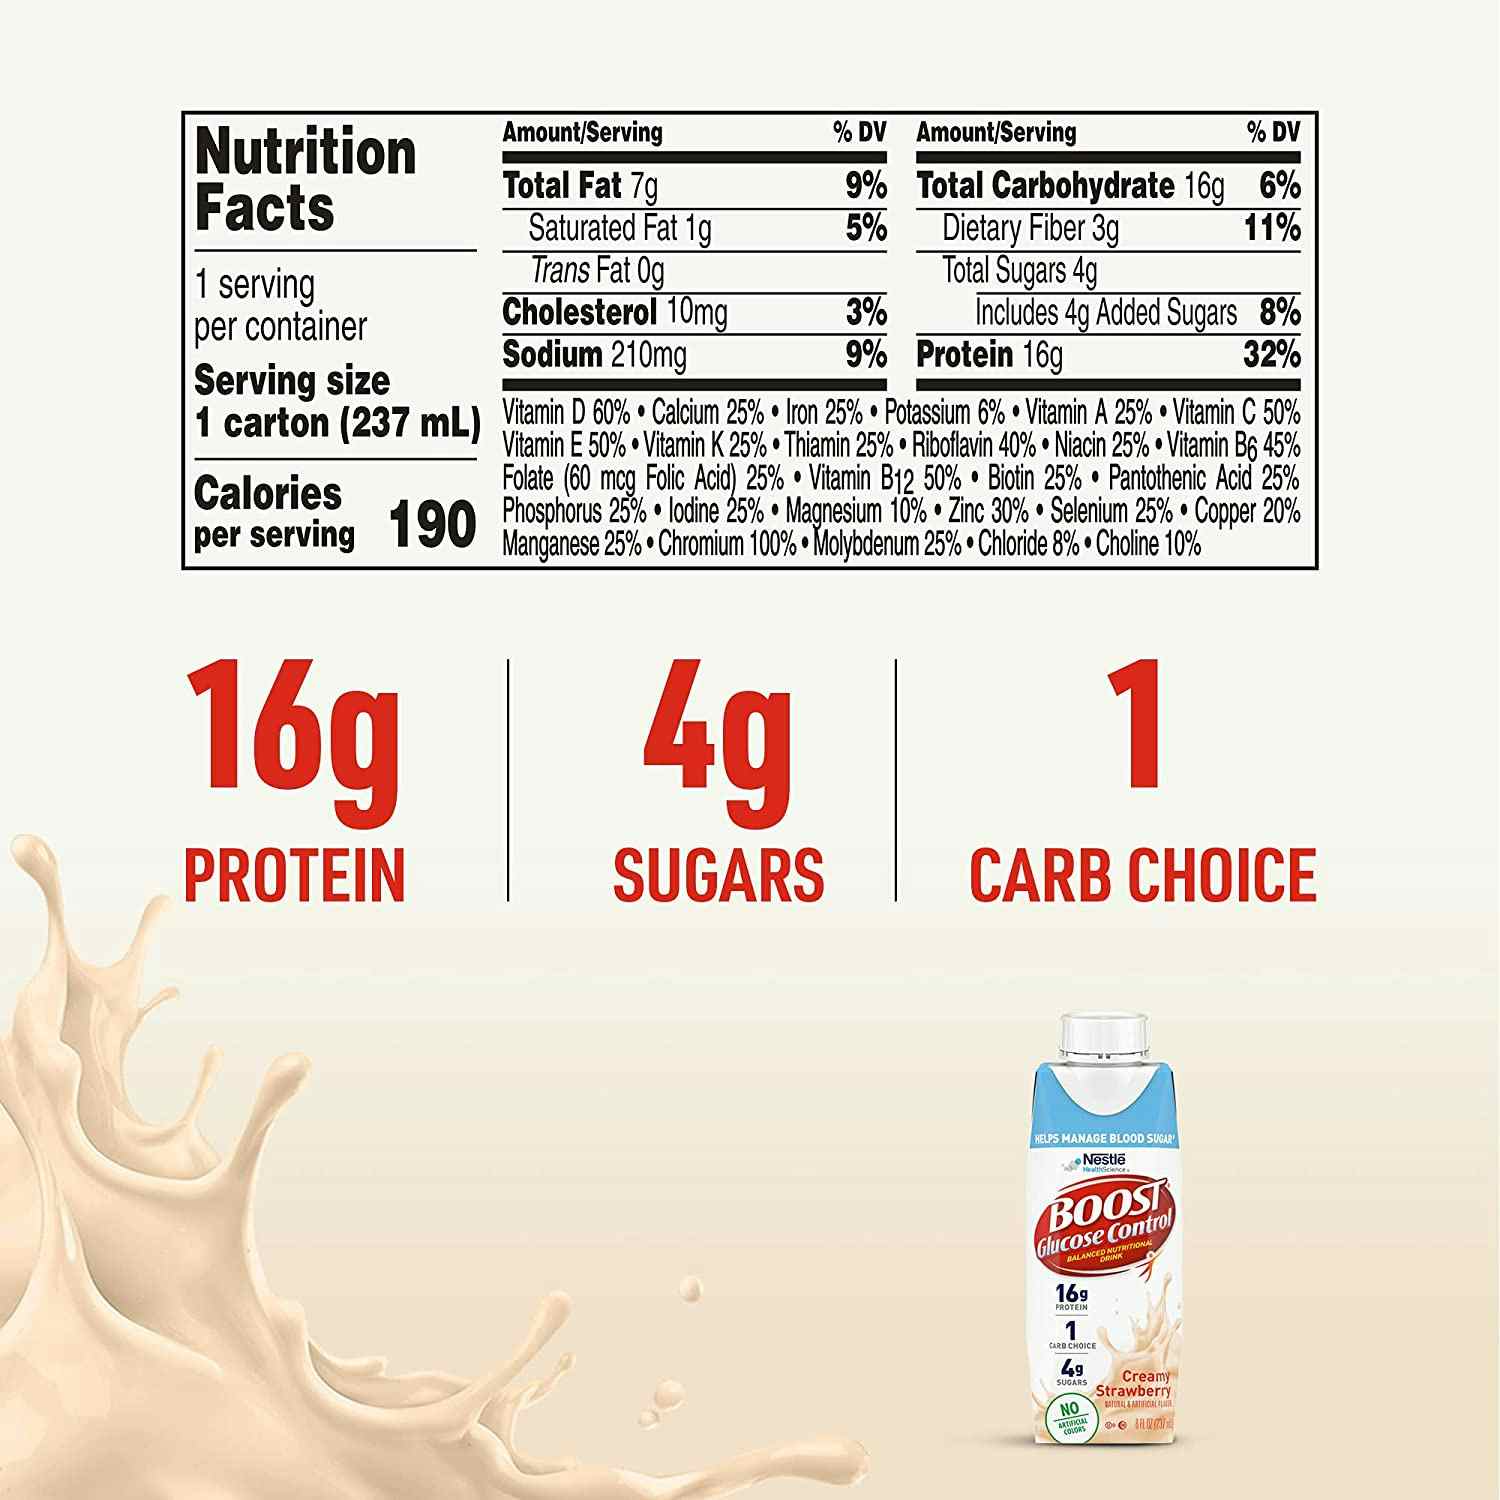 Boost Glucose Control Balanced Nutritional Drink, 8 oz., Carton, Creamy Strawberry